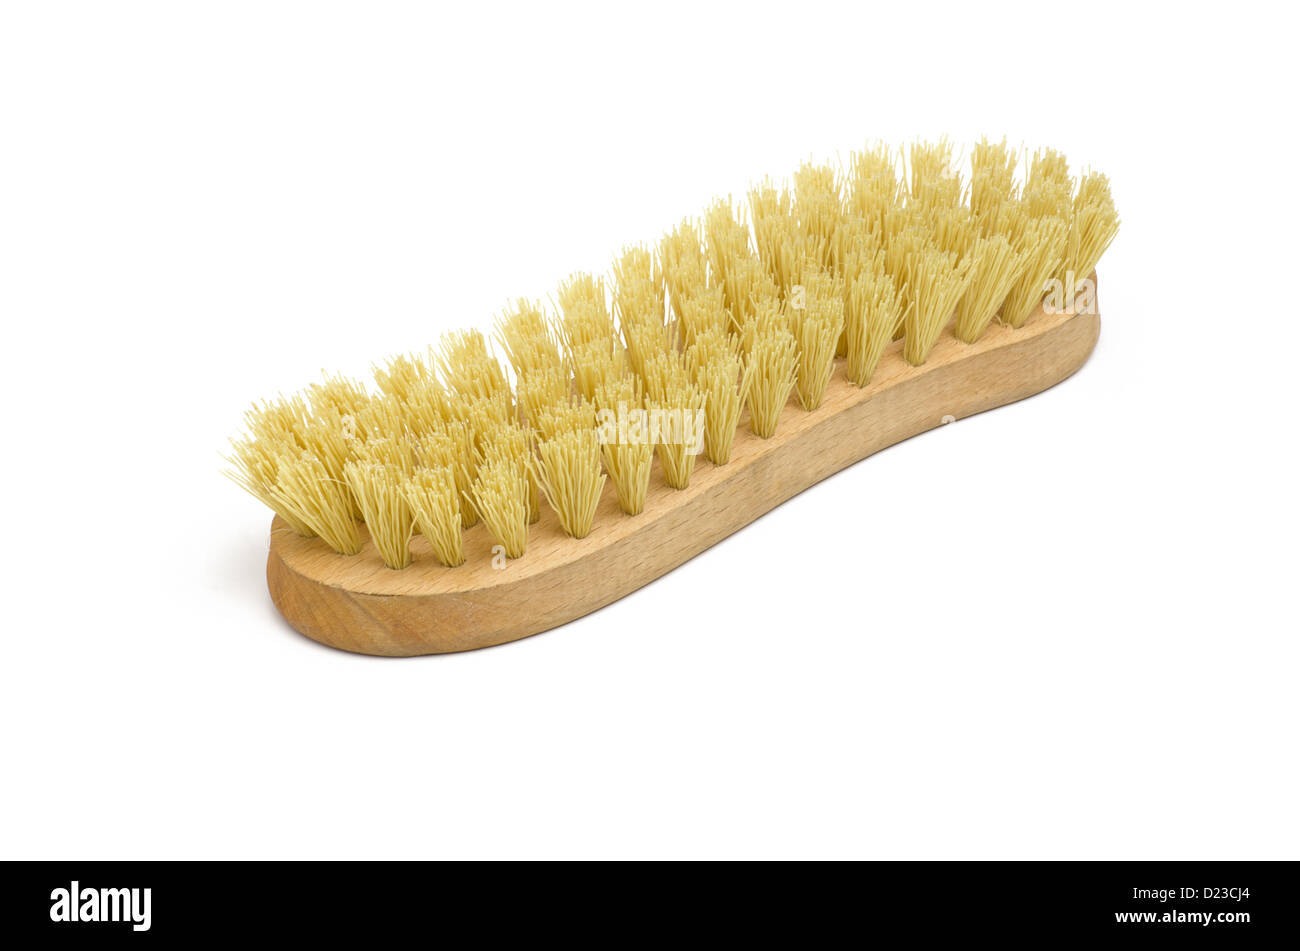 scrubbing brush Stock Photo